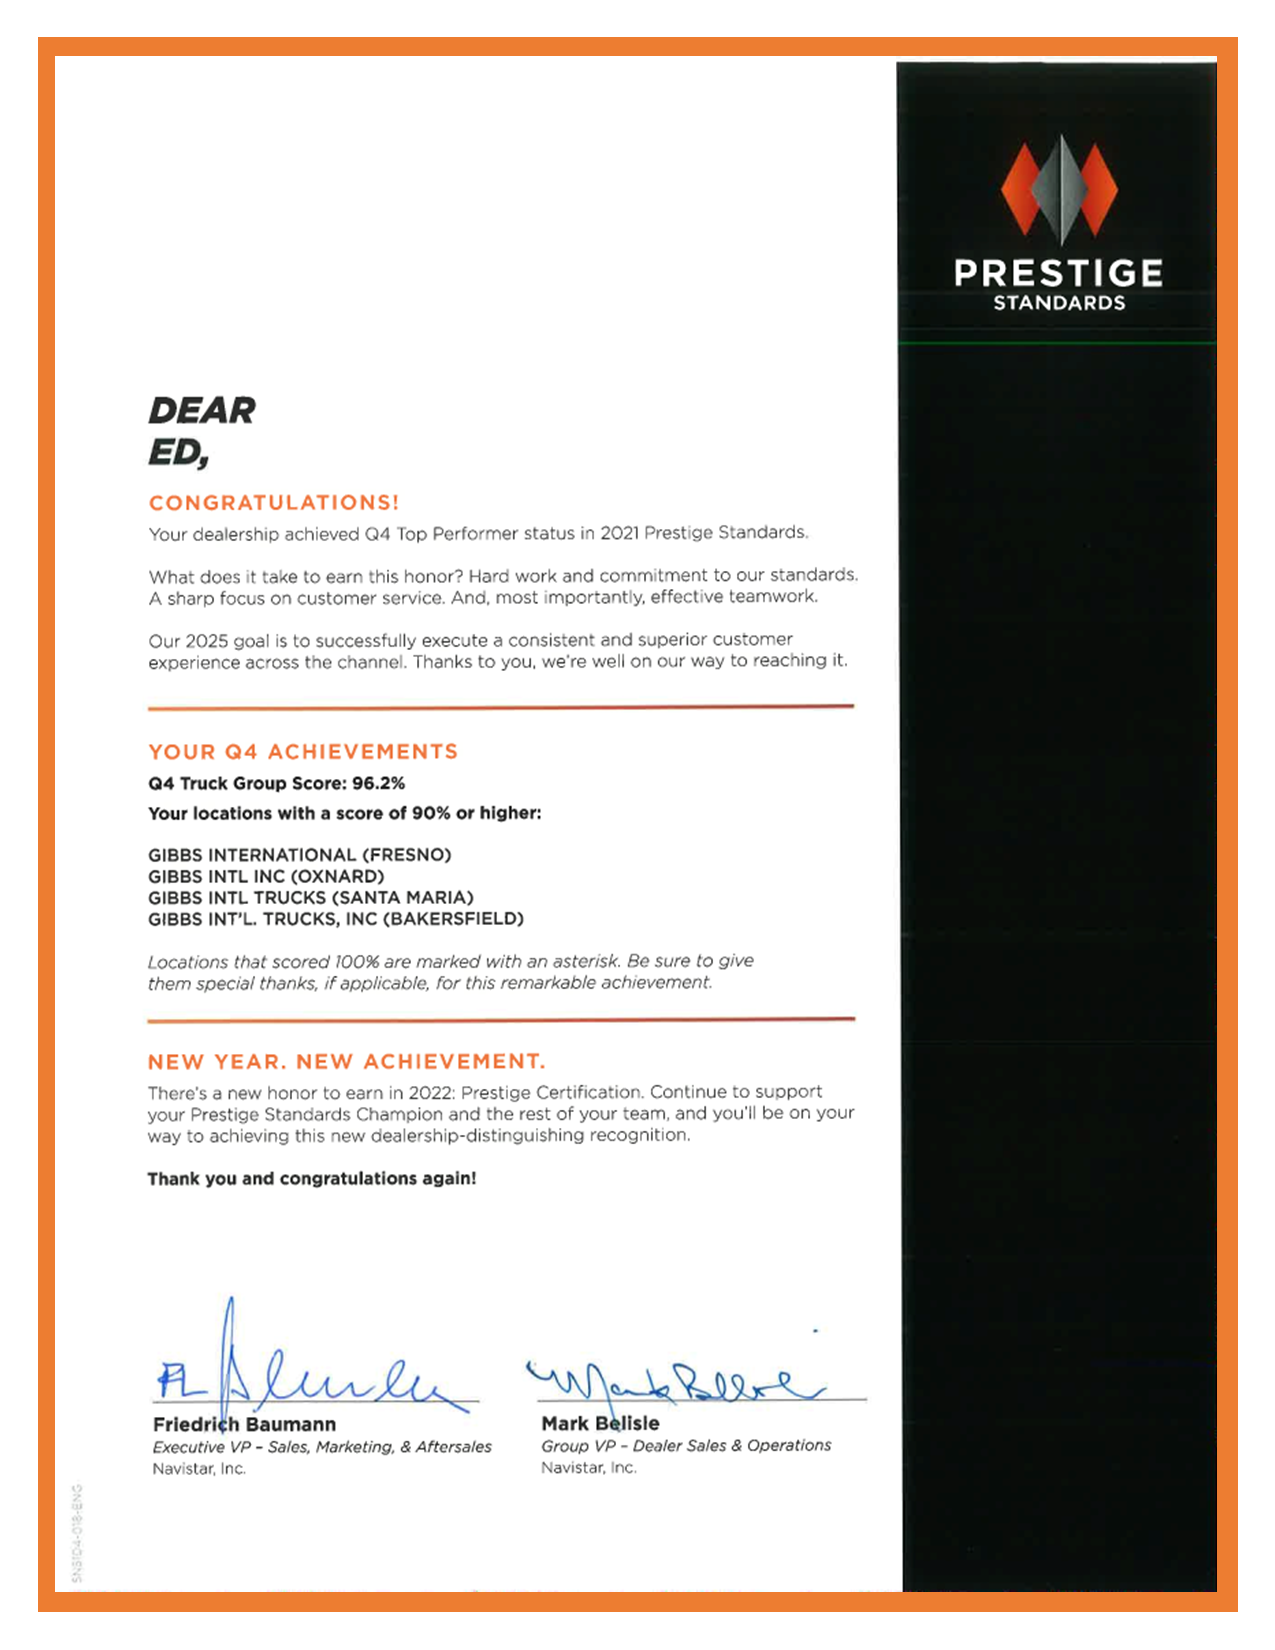 Prestige Award Letter 2021